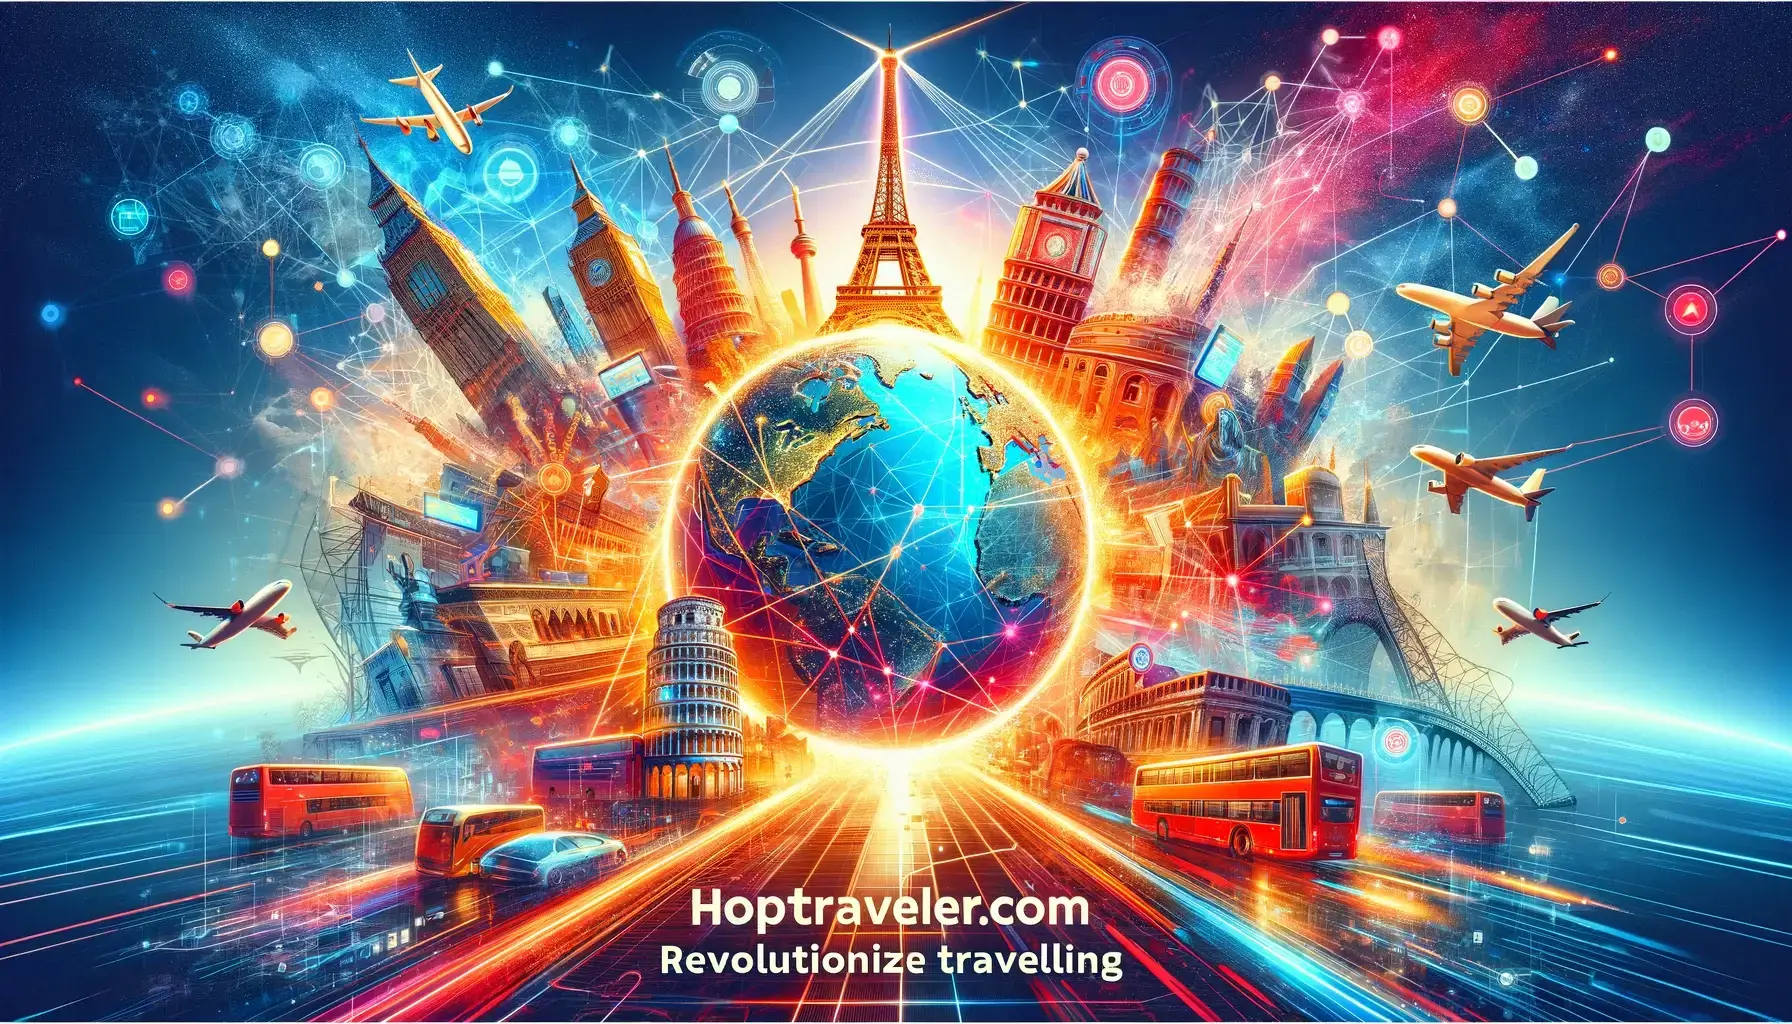 HopTraveler.com